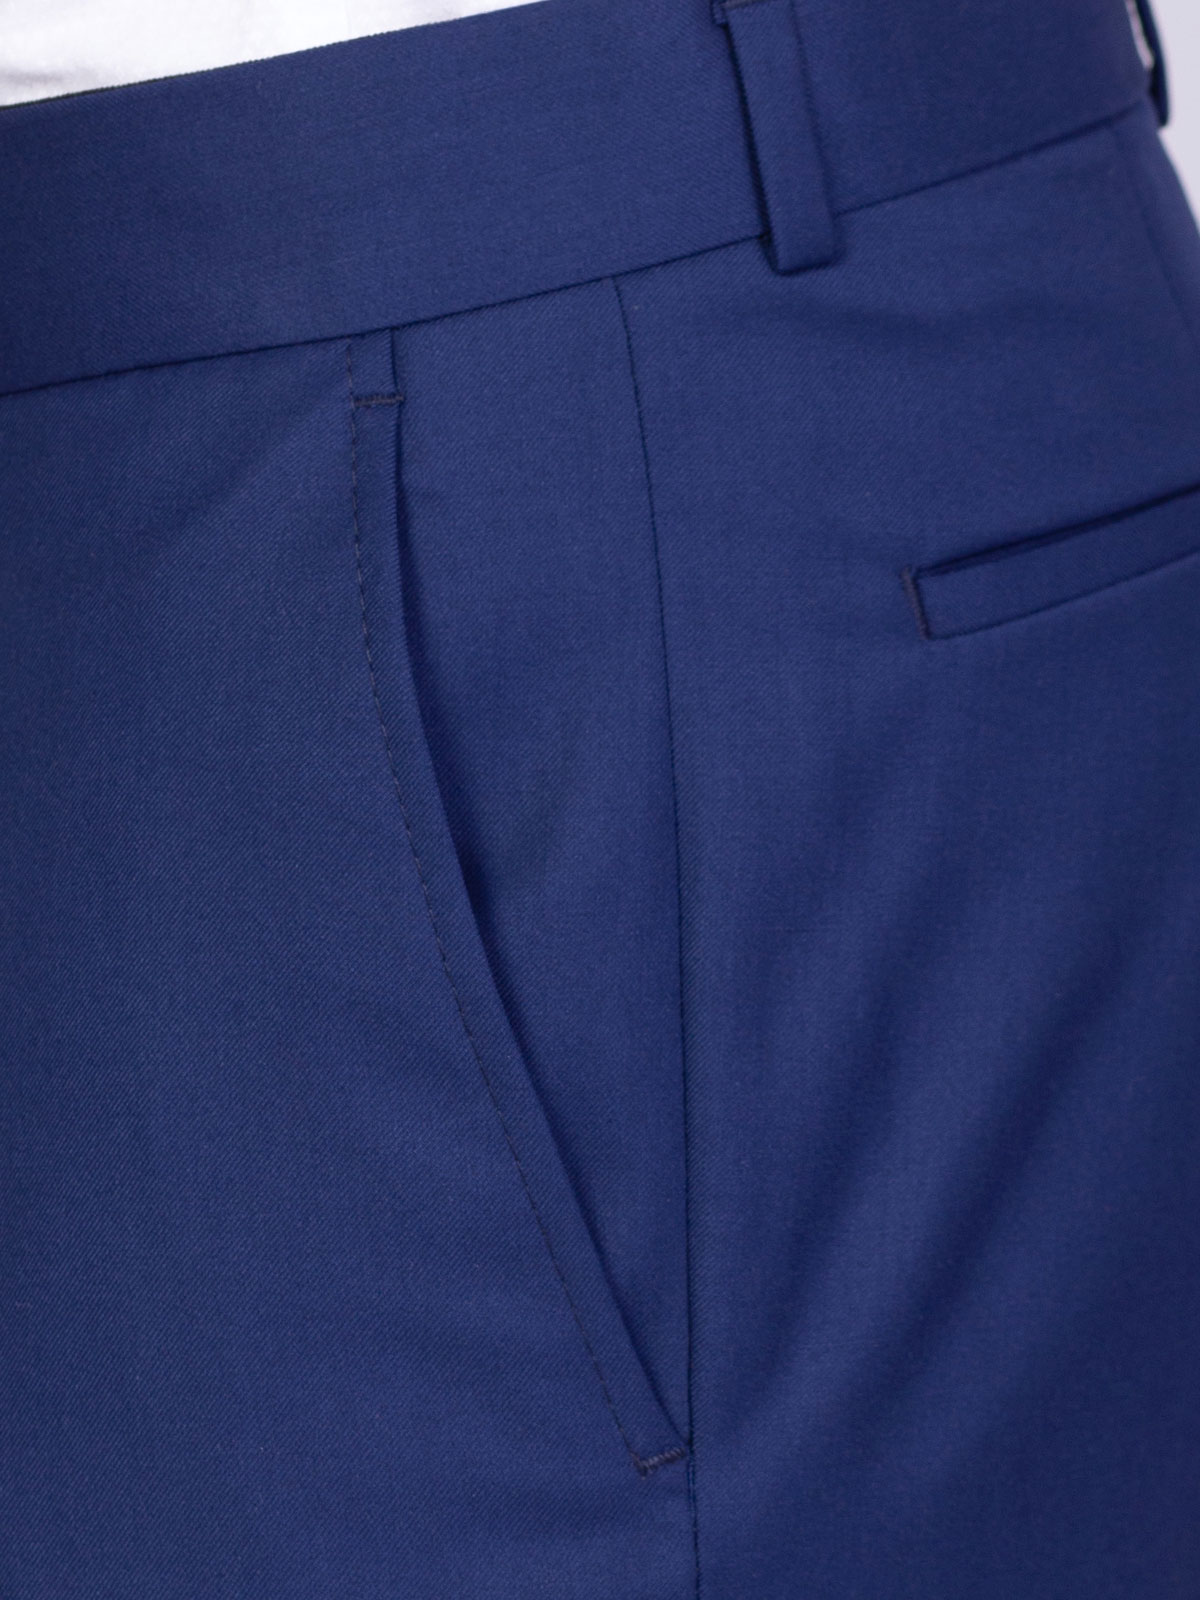 Κλασικό παντελόνι σε μπλε χρώμα - 63330 € 60.74 img3